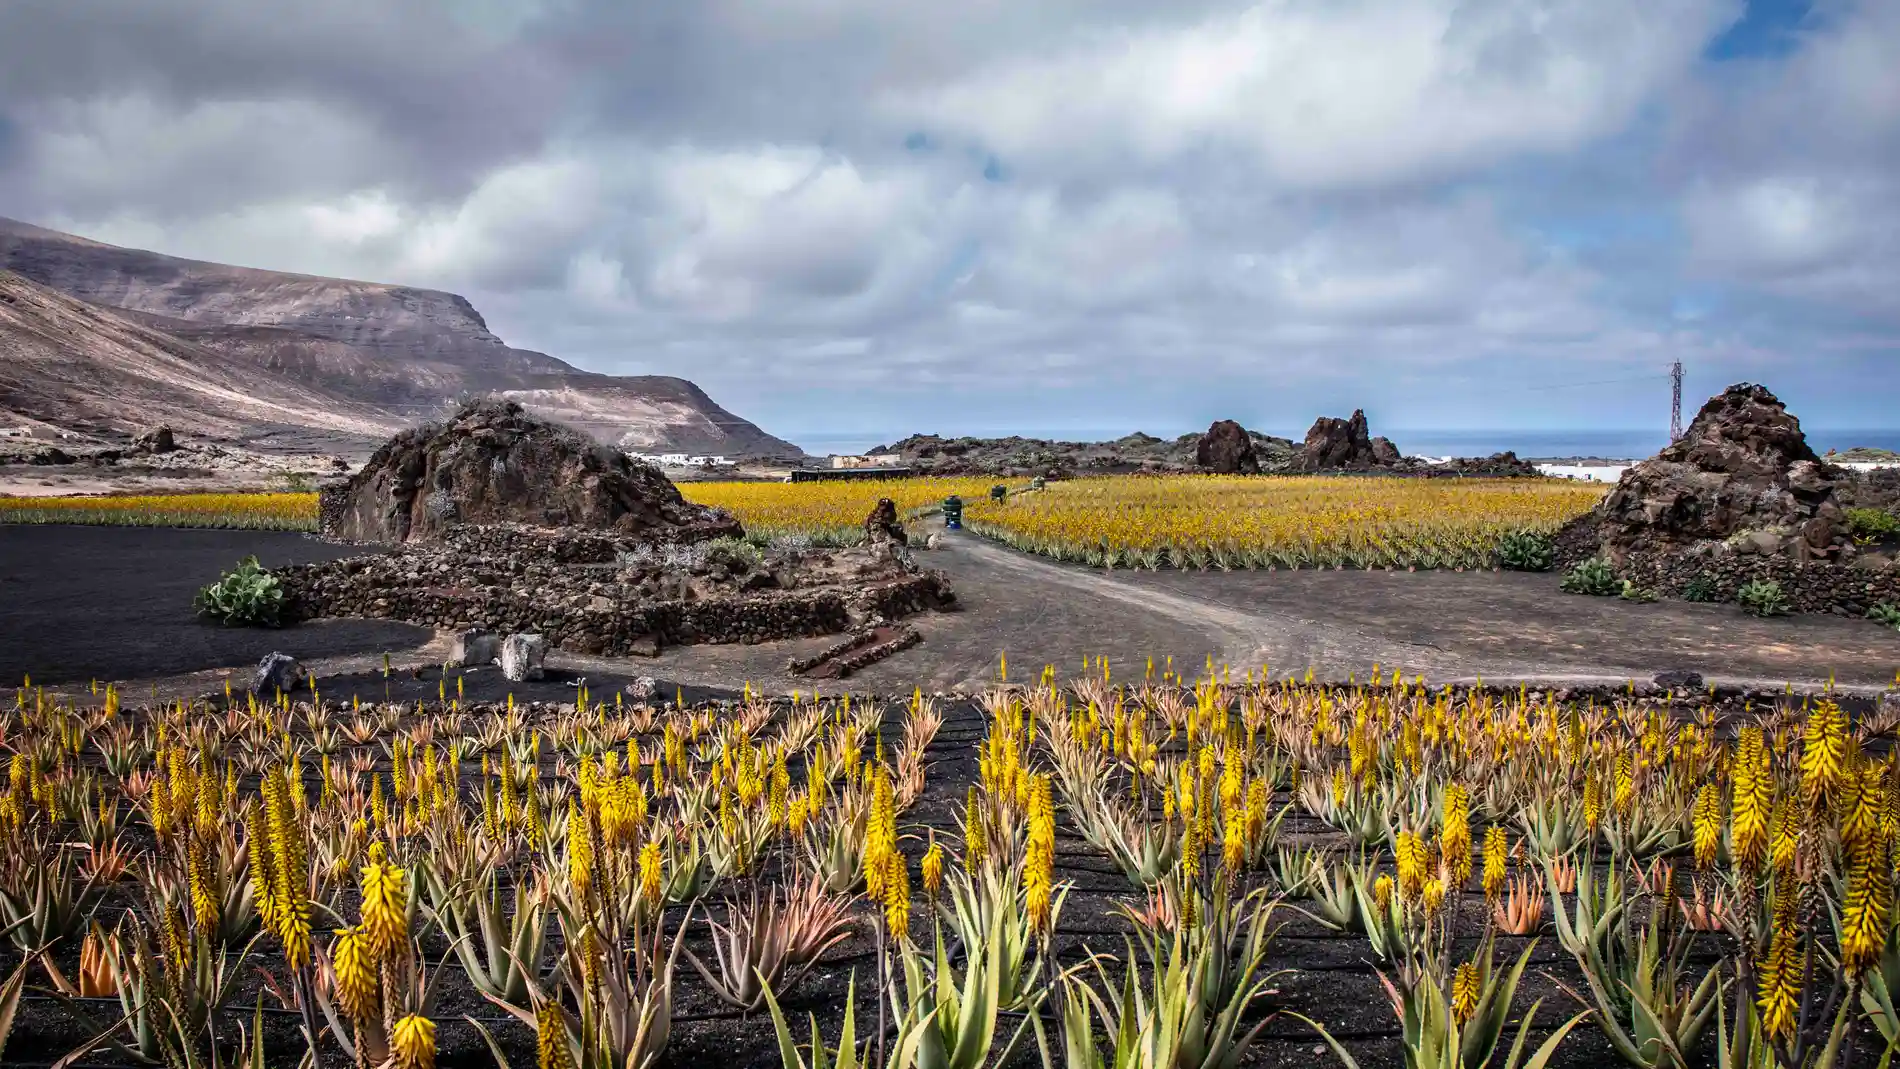 Lanzaloe es una empresa canaria que desde el año 2001 cultiva Aloe vera ecológico en la isla de Lanzarote